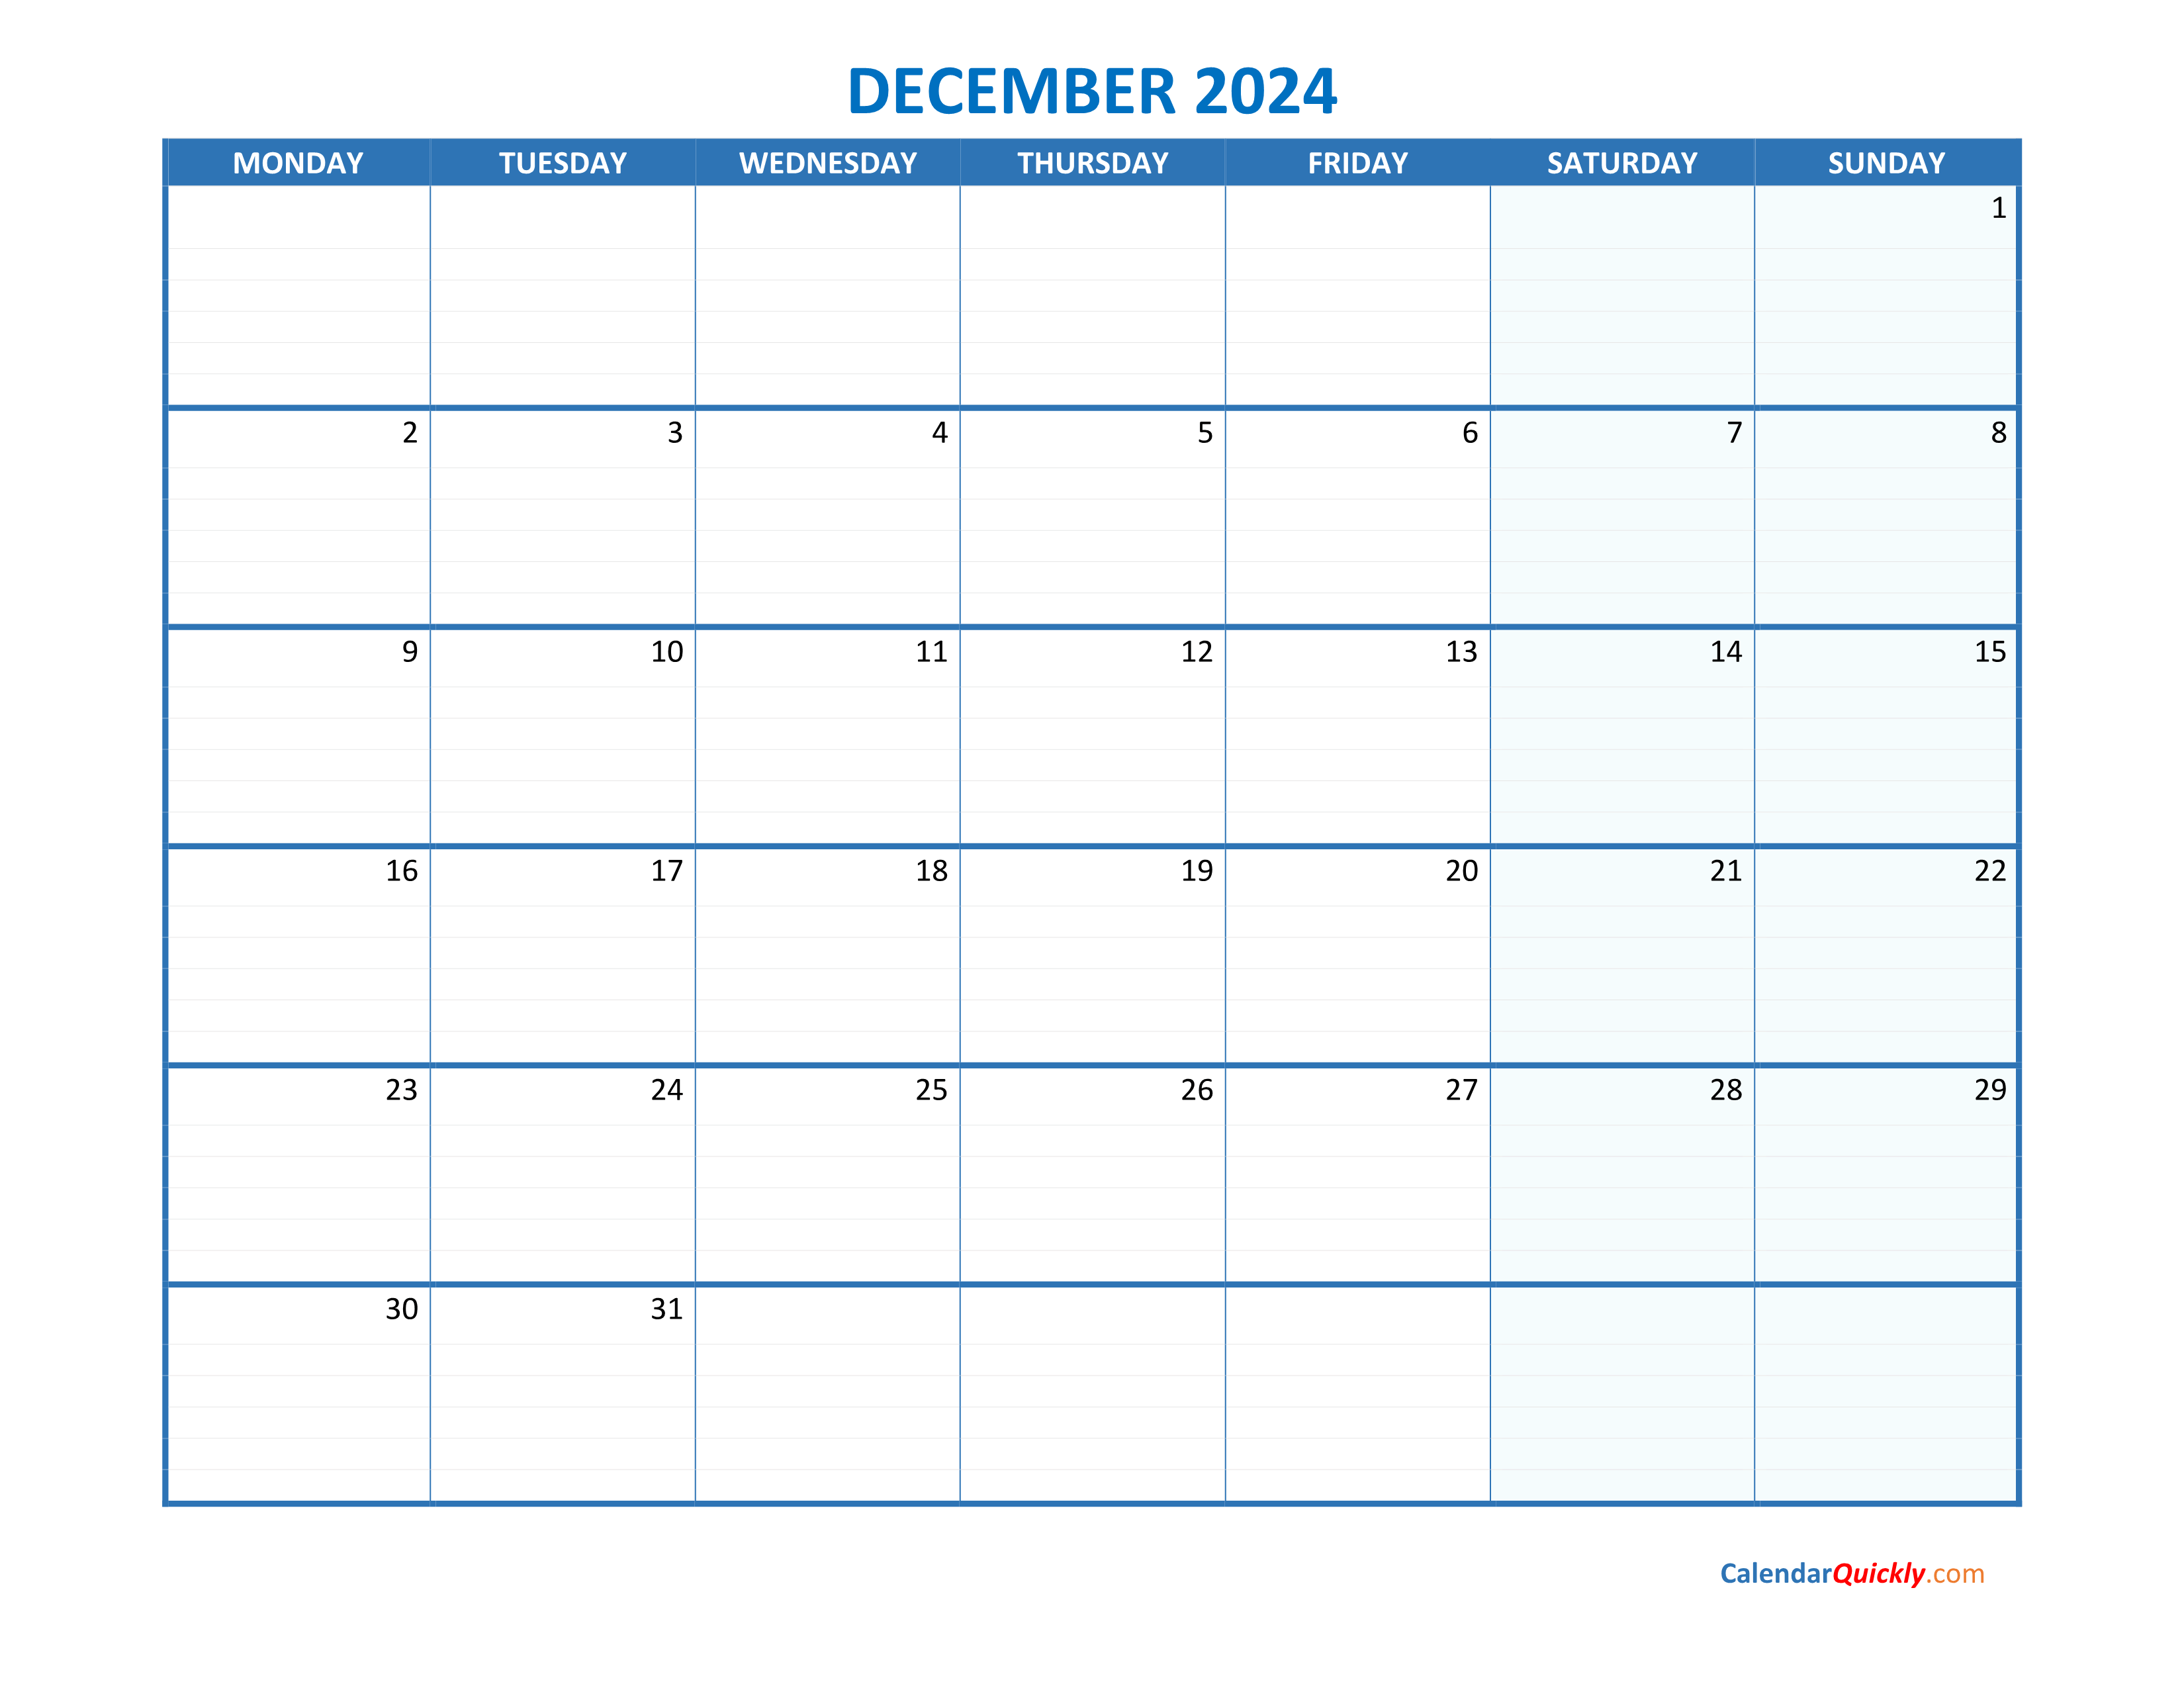 december-monday-2024-blank-calendar-calendar-quickly